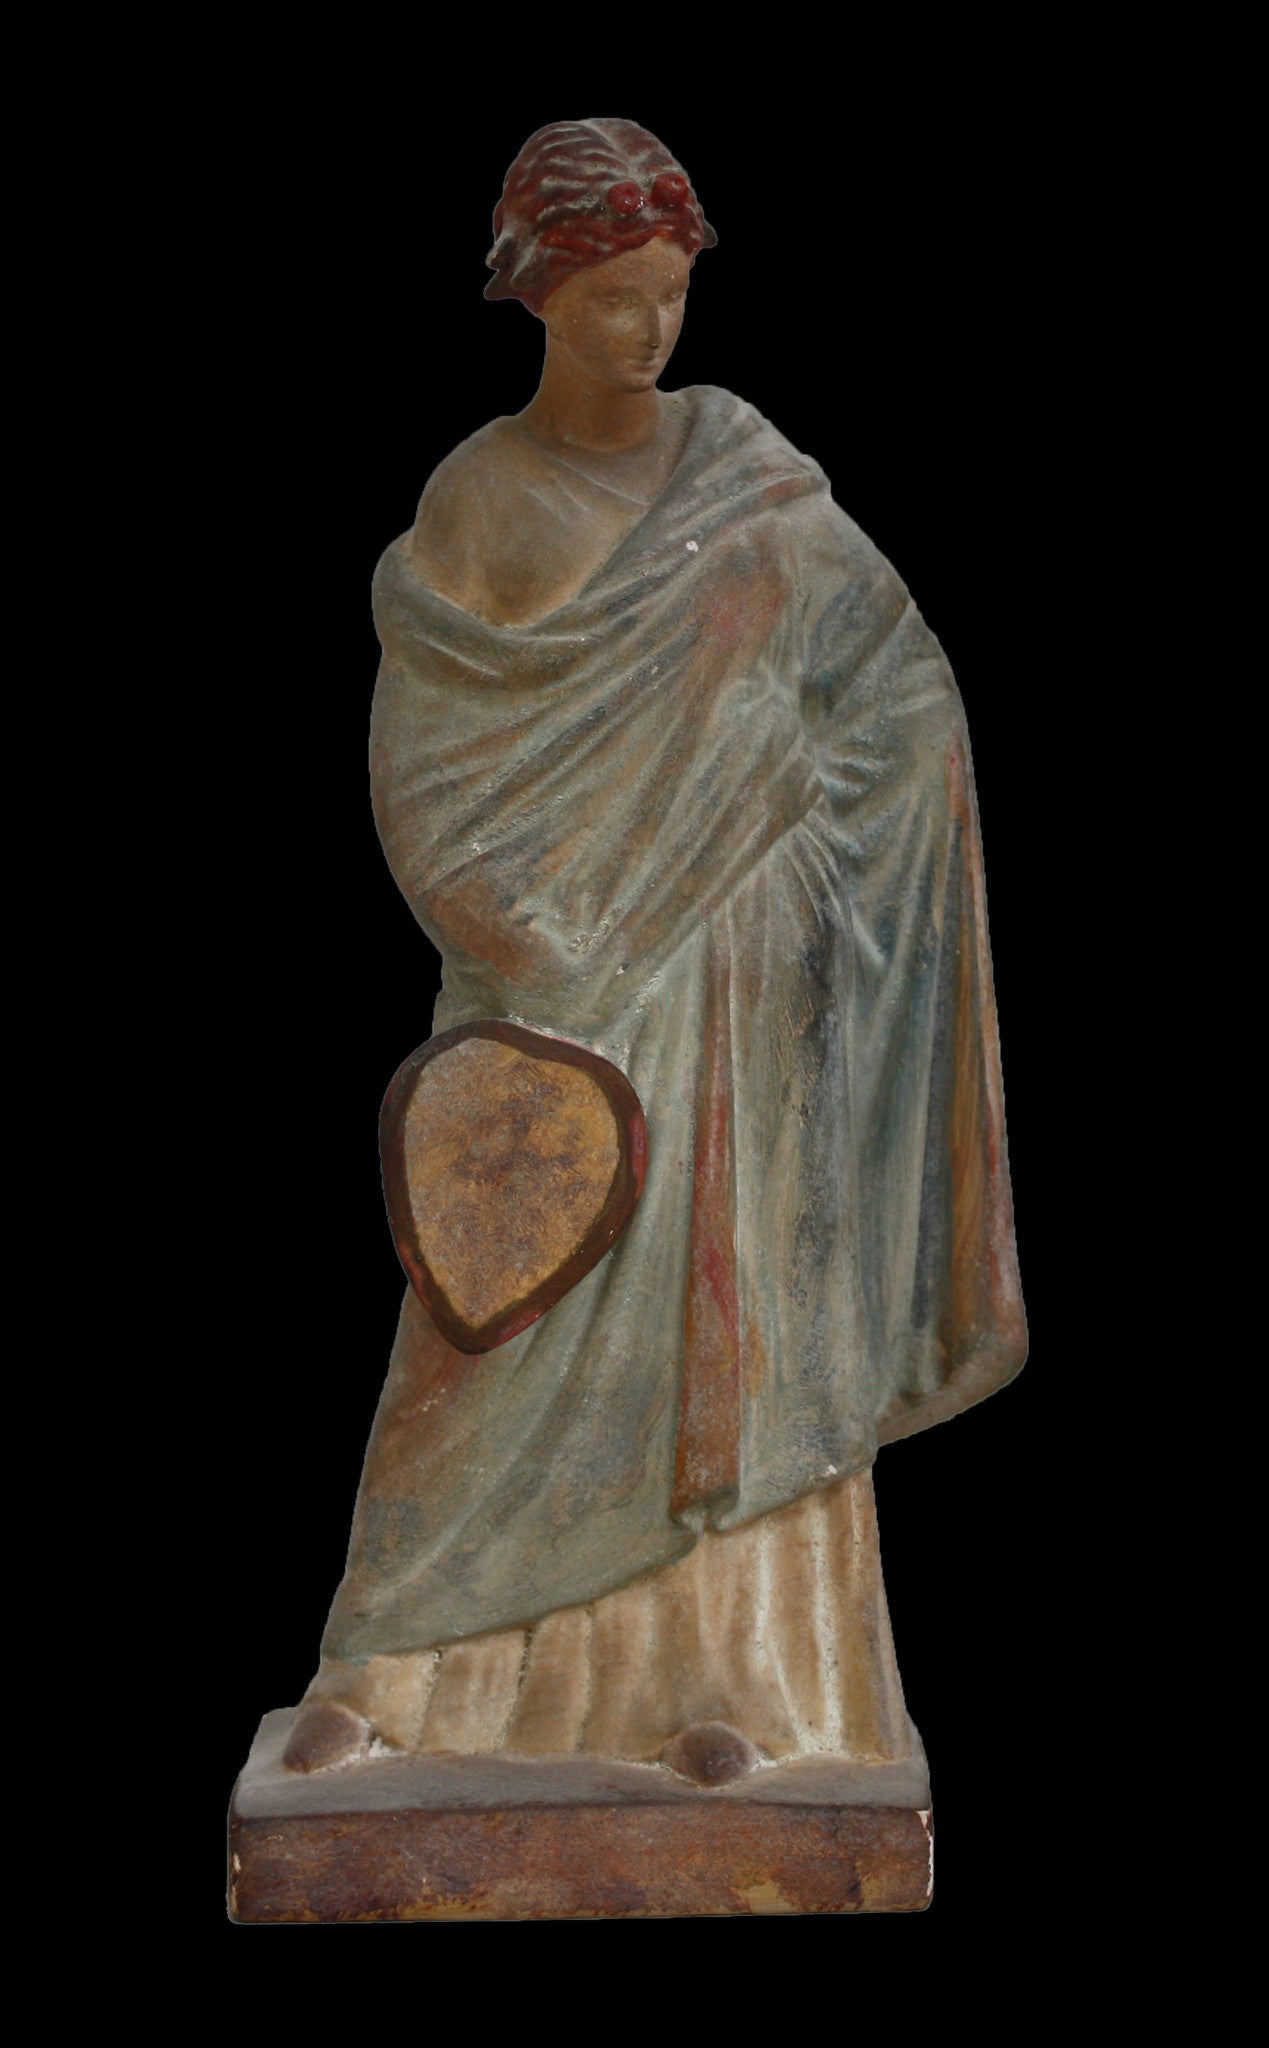 Tanagra Figurine with Fan - Item #320